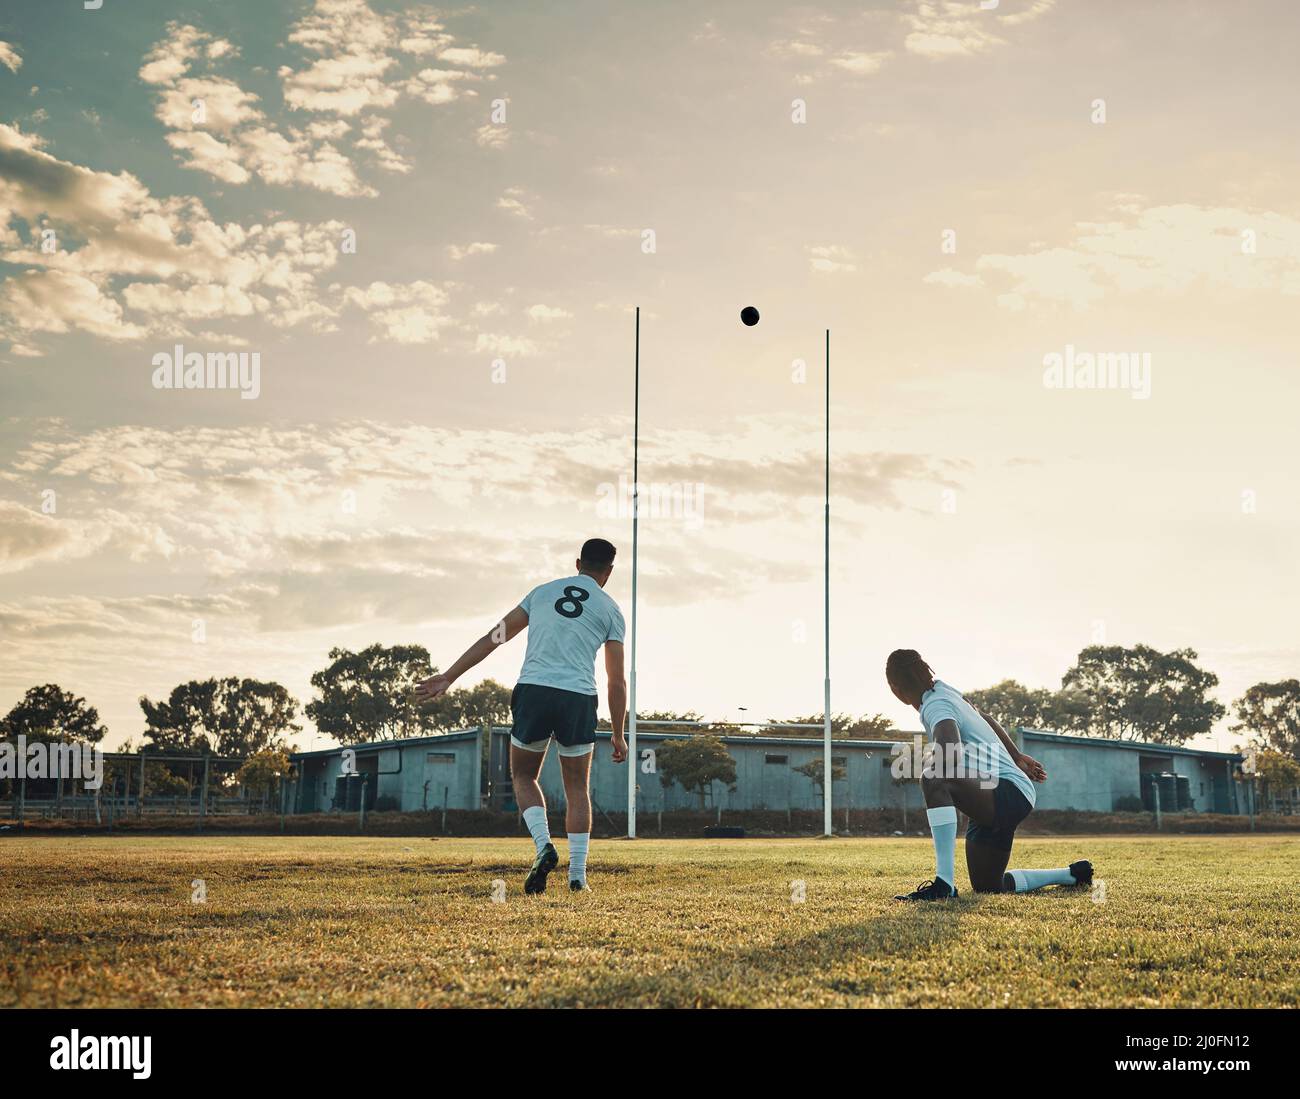 Das war ein Meisterstoß. Ganzkörperschuss von zwei jungen Rugby-Spielern, die tagsüber gemeinsam auf dem Feld trainieren. Stockfoto